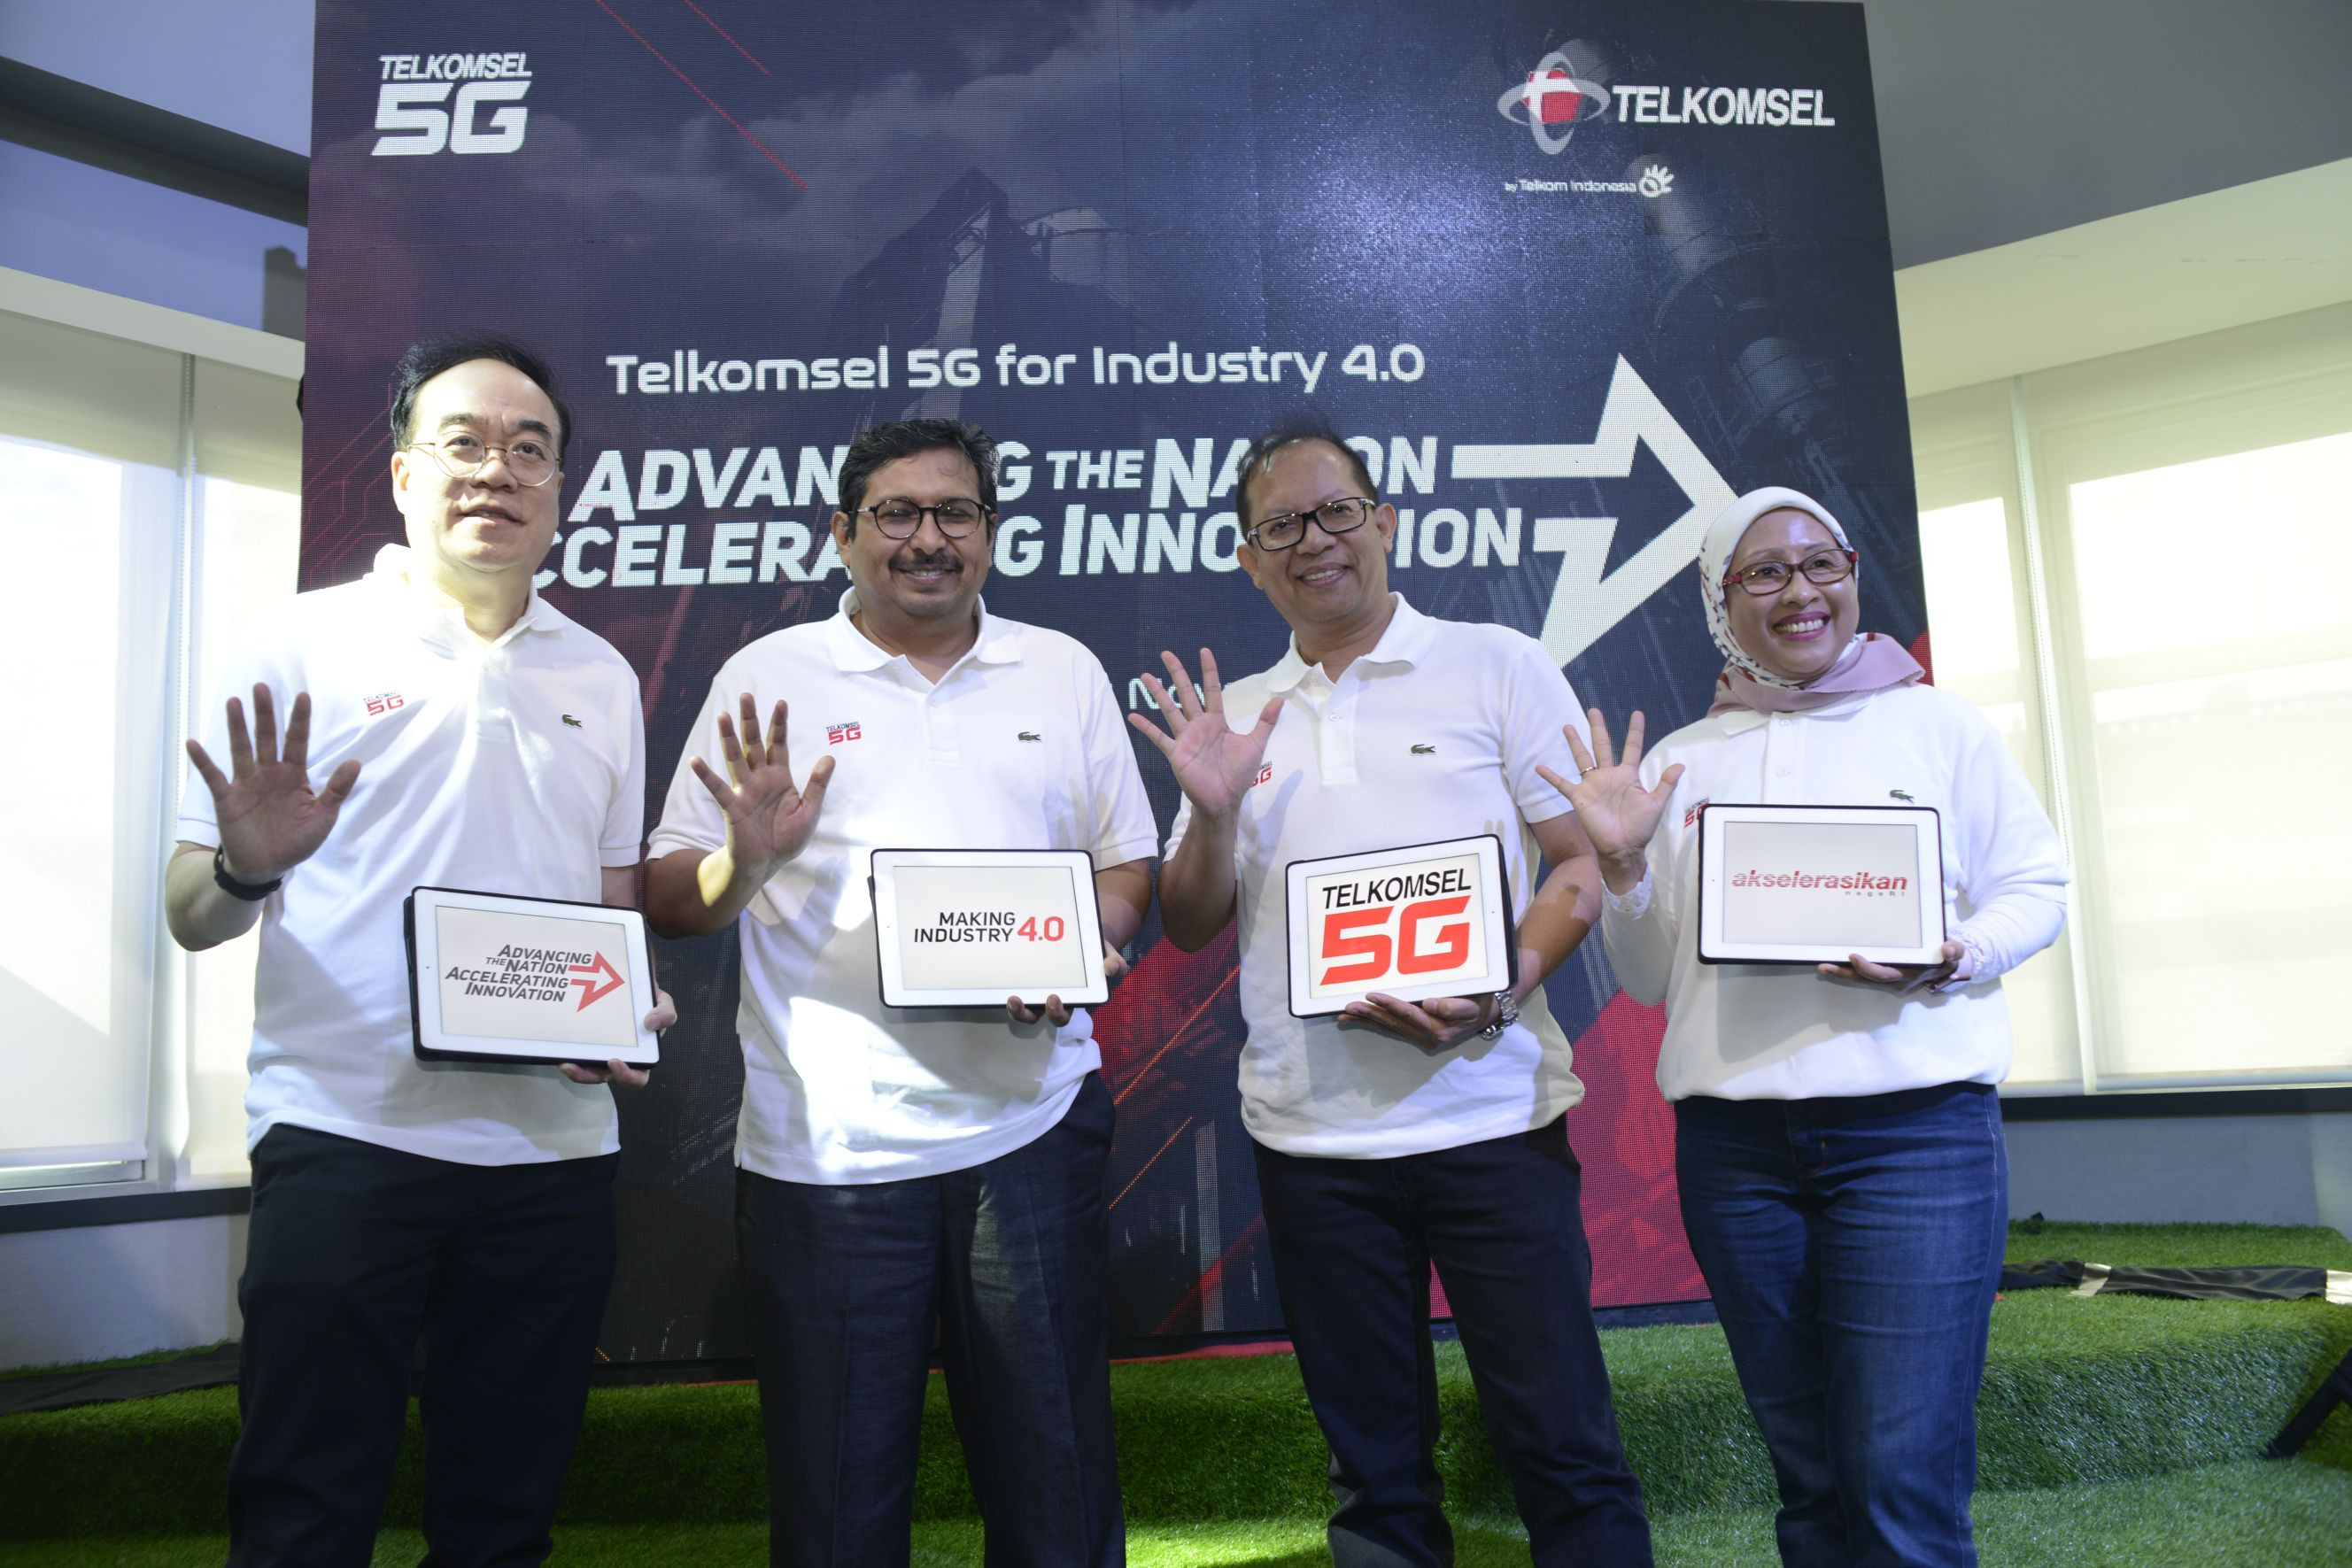 Telkomsel Gelar Uji Coba 5G untuk Kebutuhan Industri,  Akselerasikan Negeri Menuju Making Indonesia 4.0